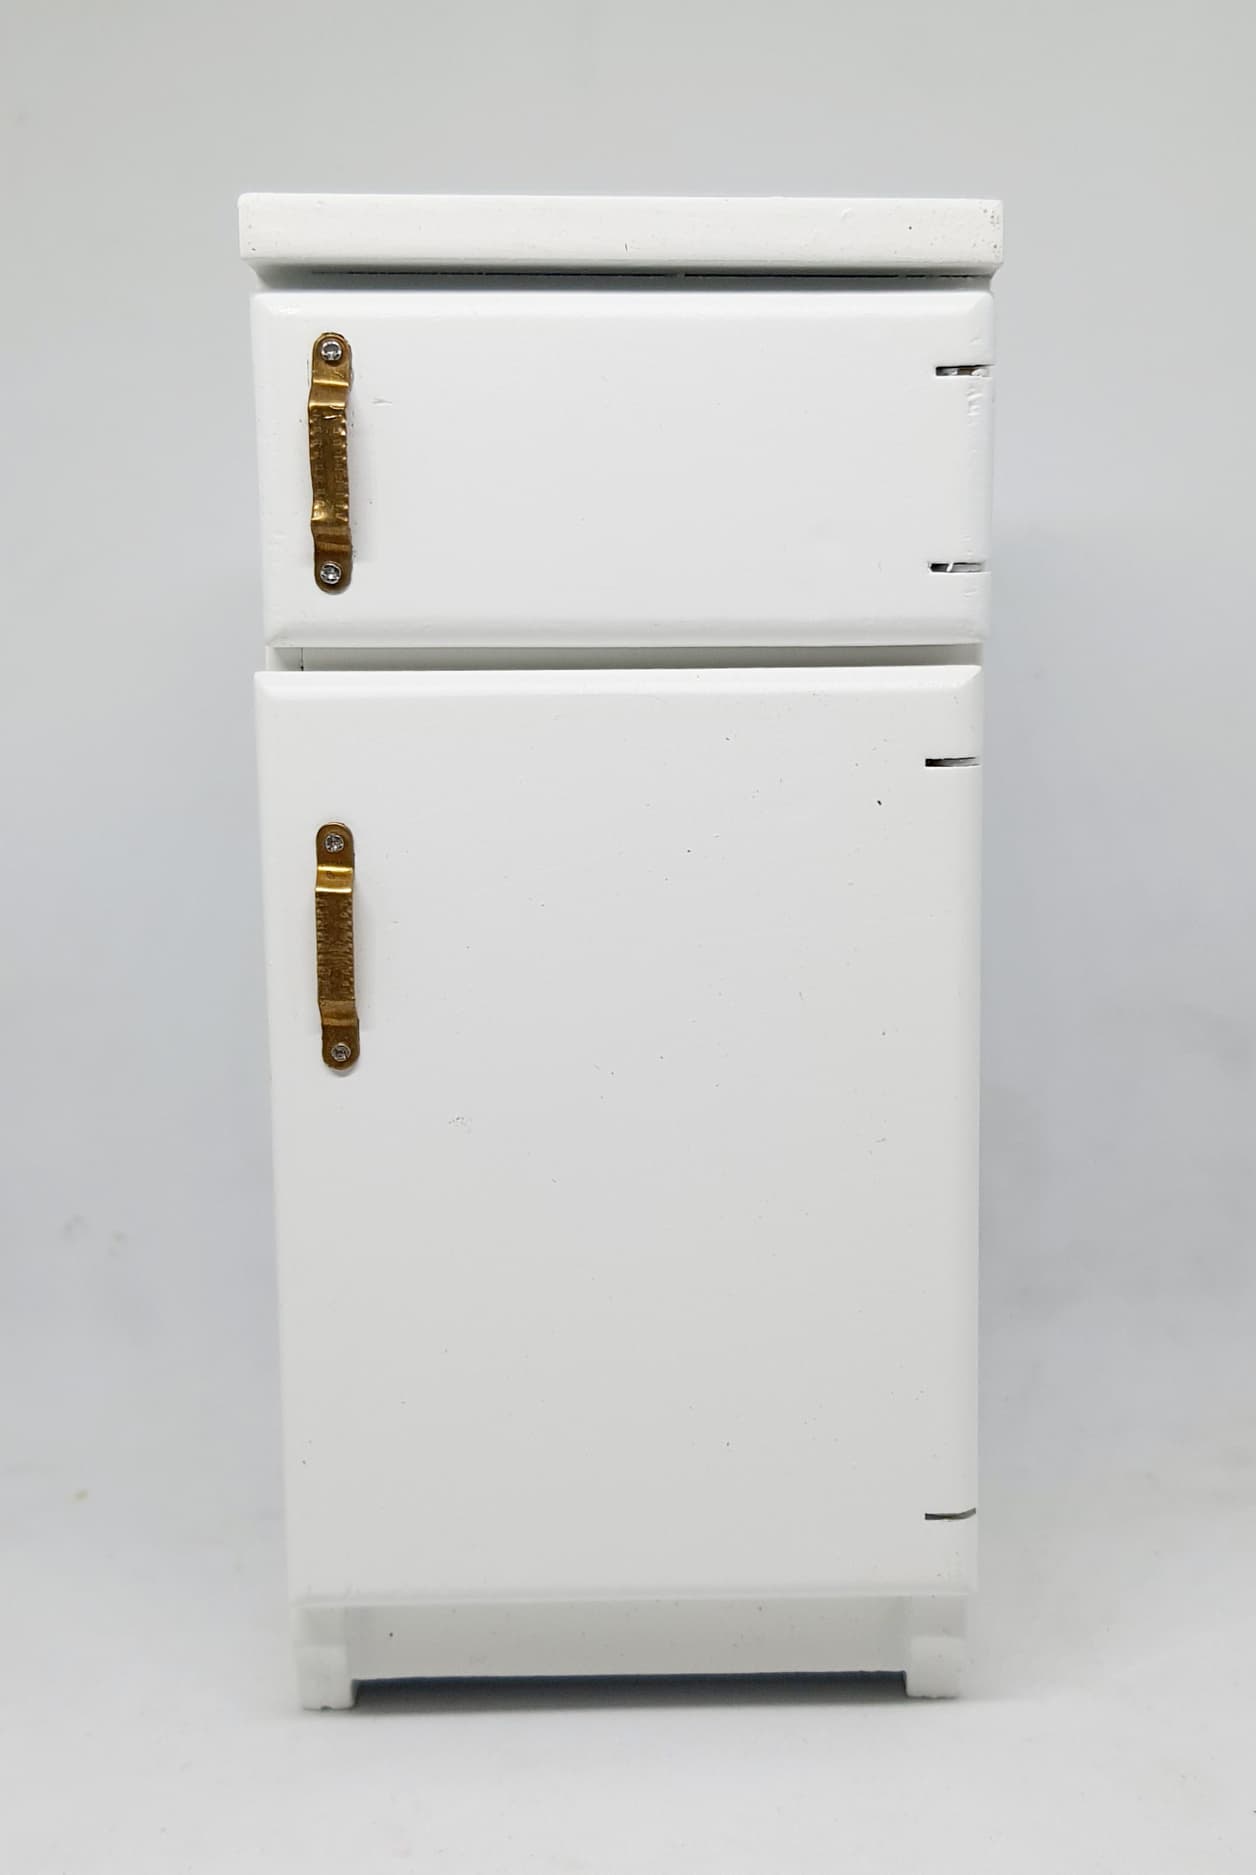 A052-ตู้เย็น2ประตูงานไม้ทำสี